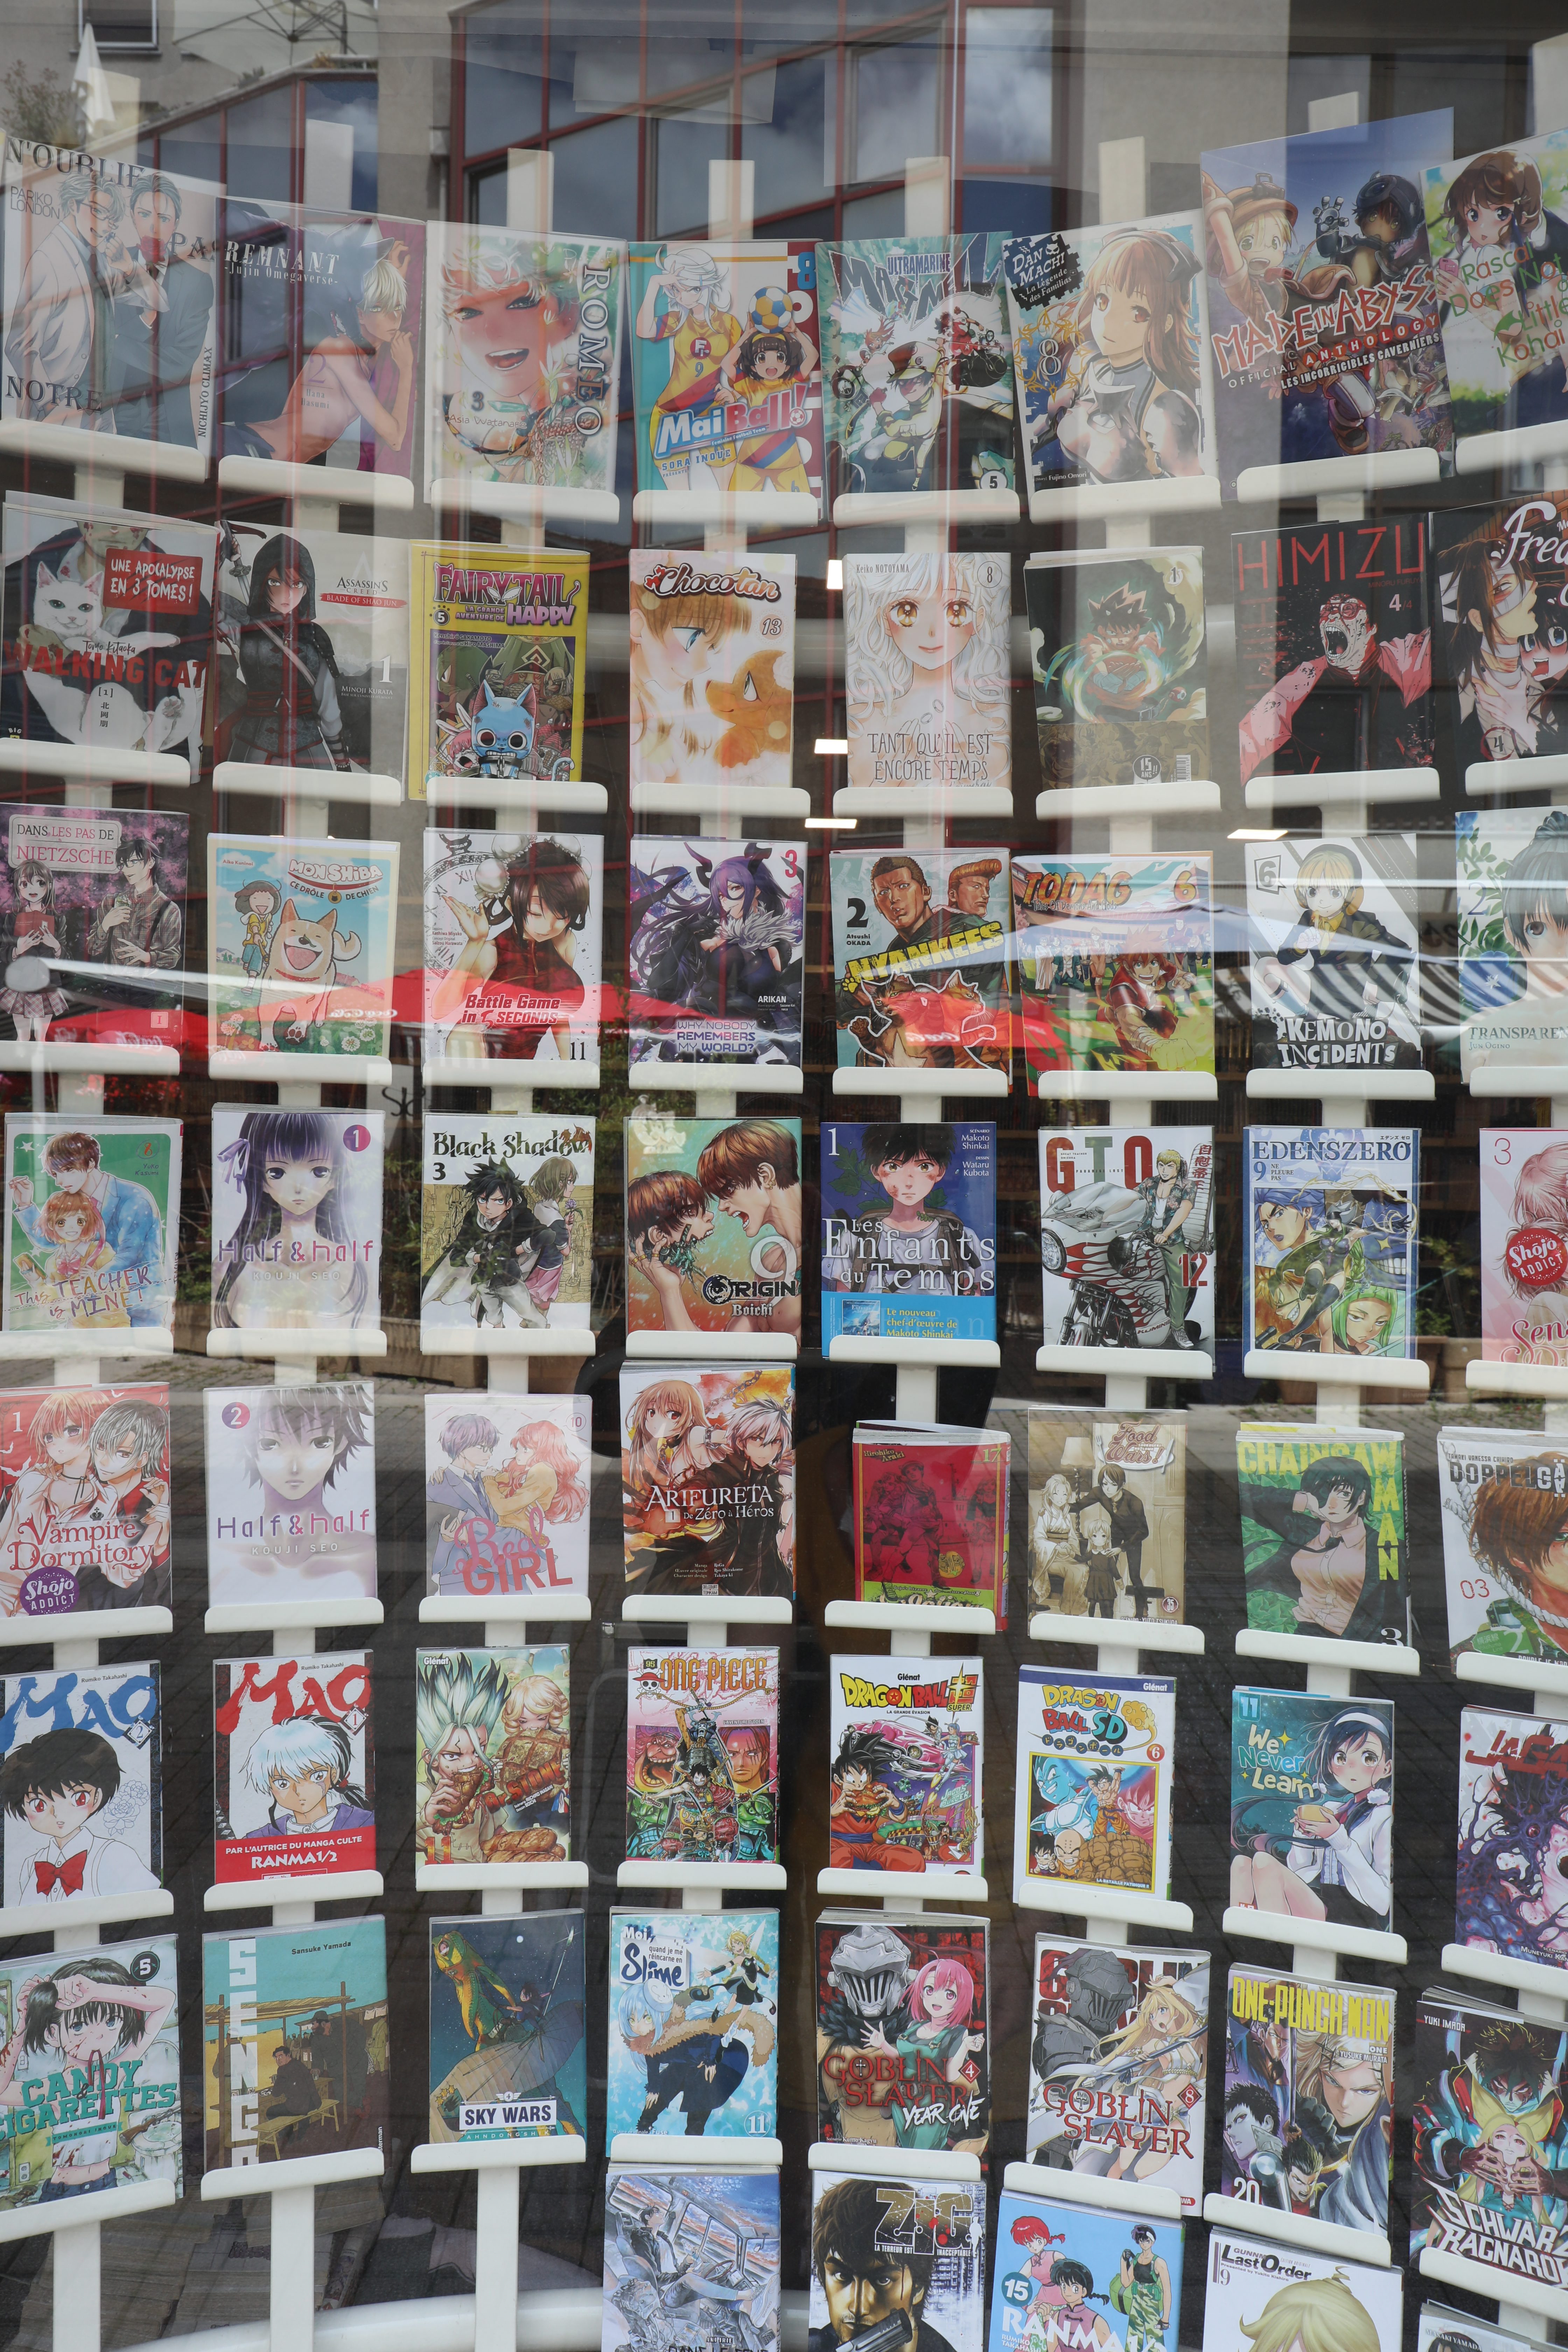 Pass Culture : 71 % des livres réservés sont des mangas